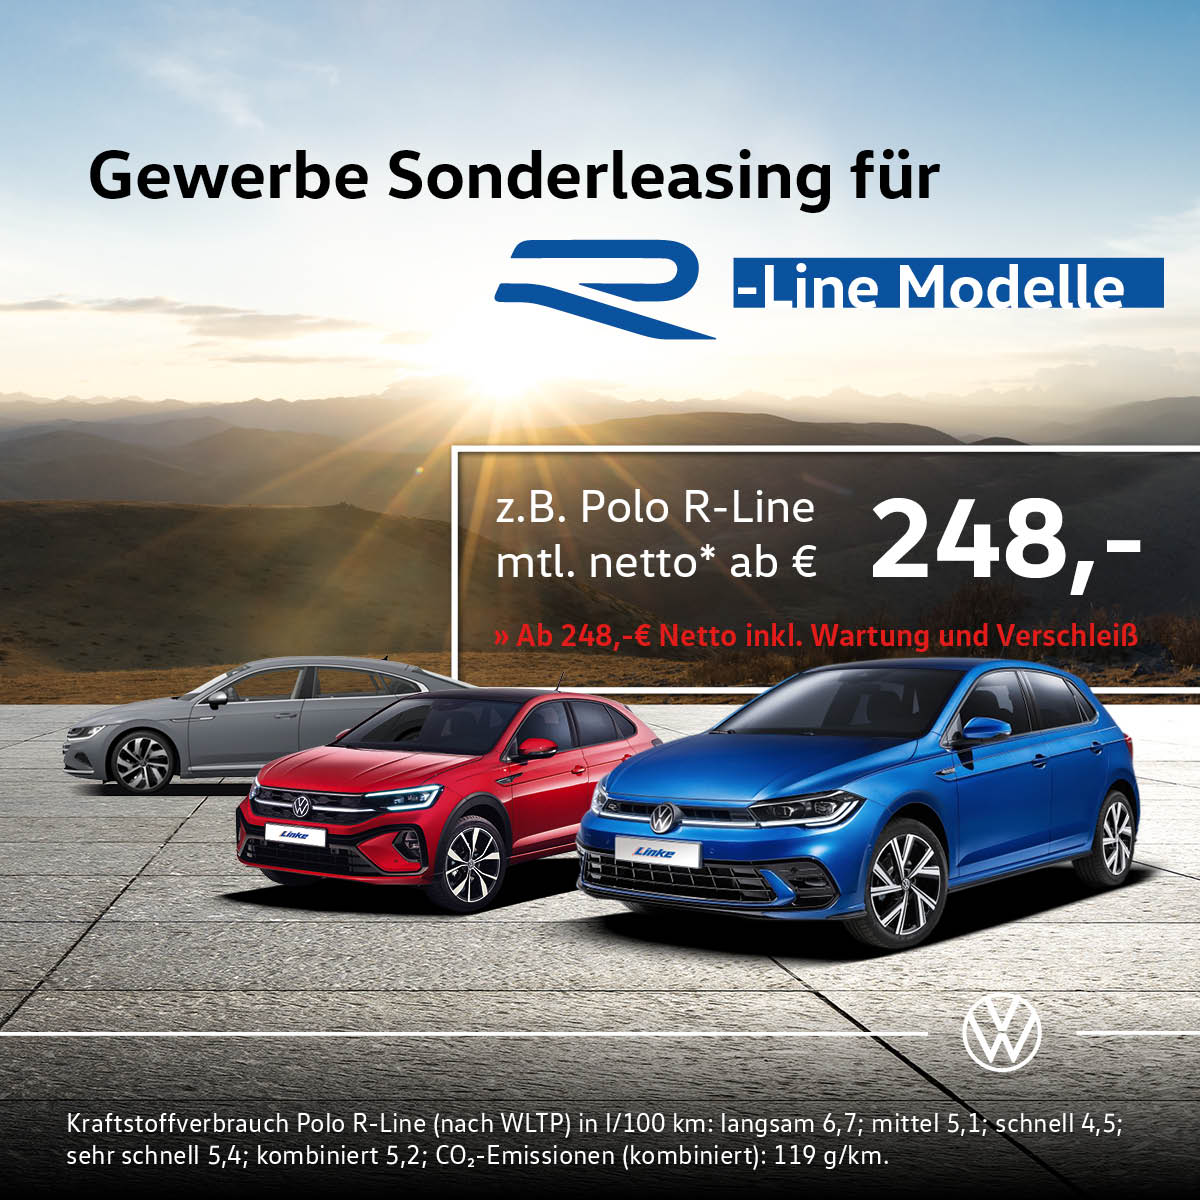 Autohaus Linke in Crailshaim Volkswagen Gewerbe Sonderleasing für R-Line Modelle - Beitragsbild